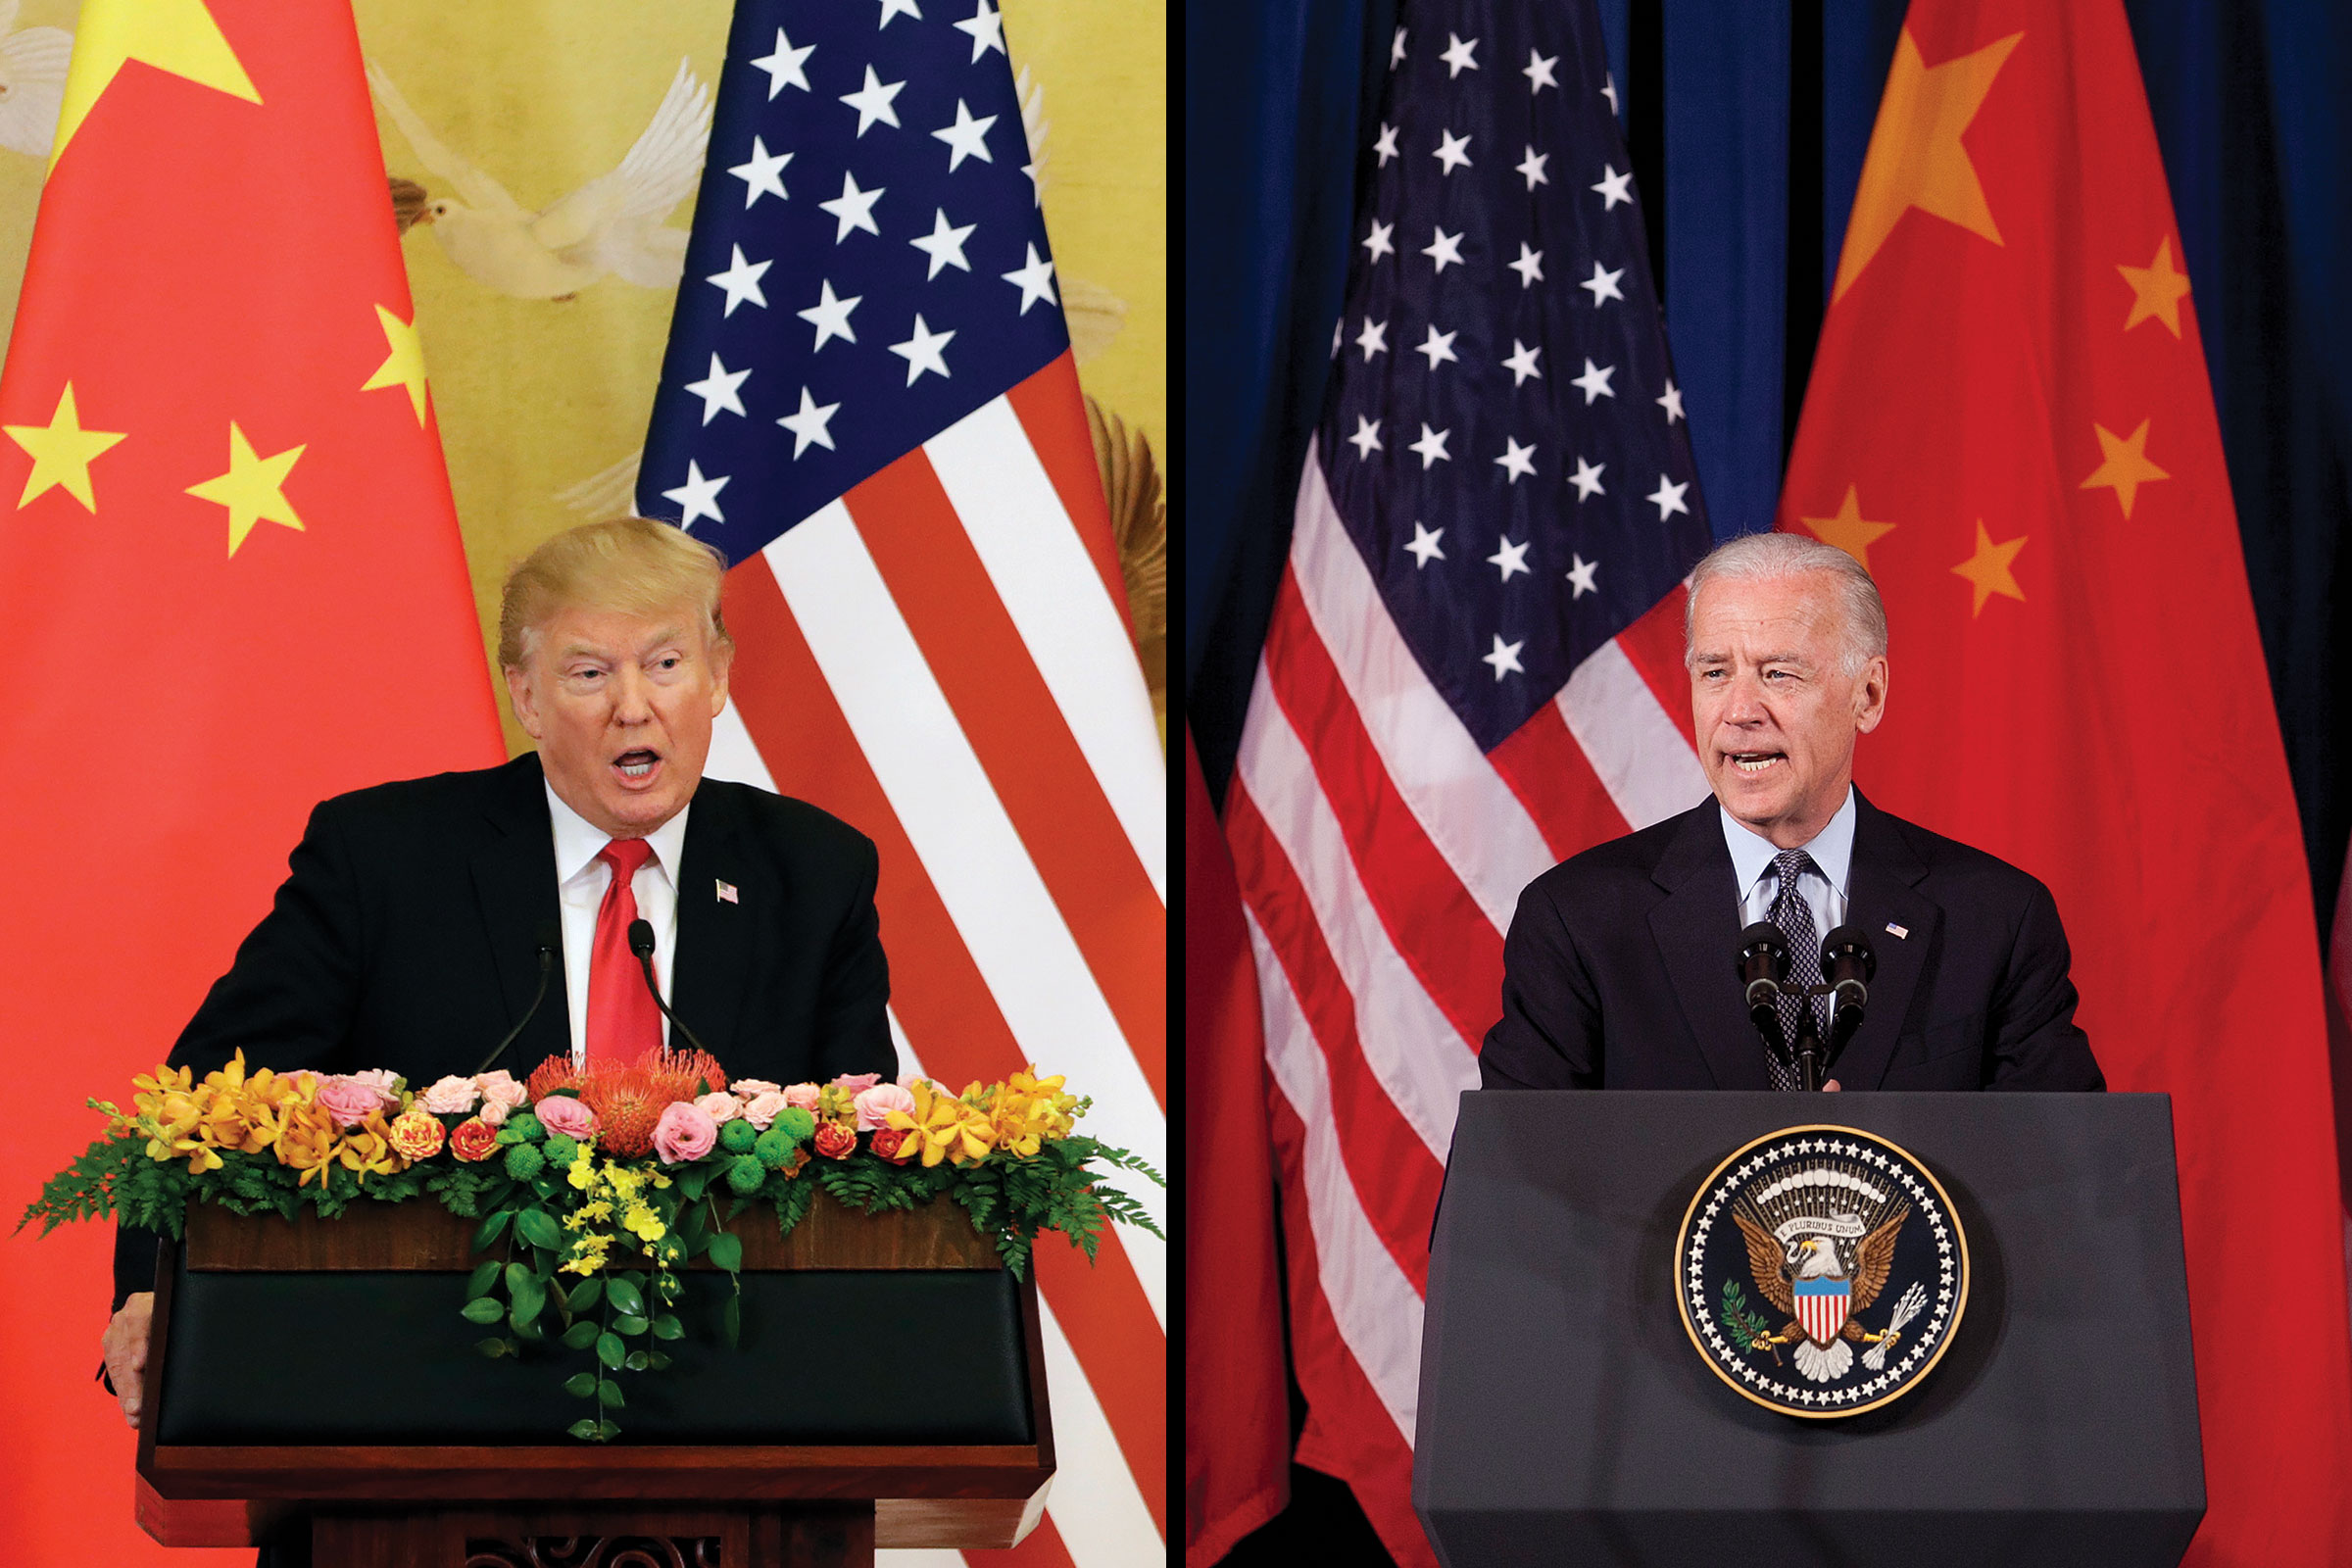 Trump v Biden: Two Takes on Taming a 'Rising China'v